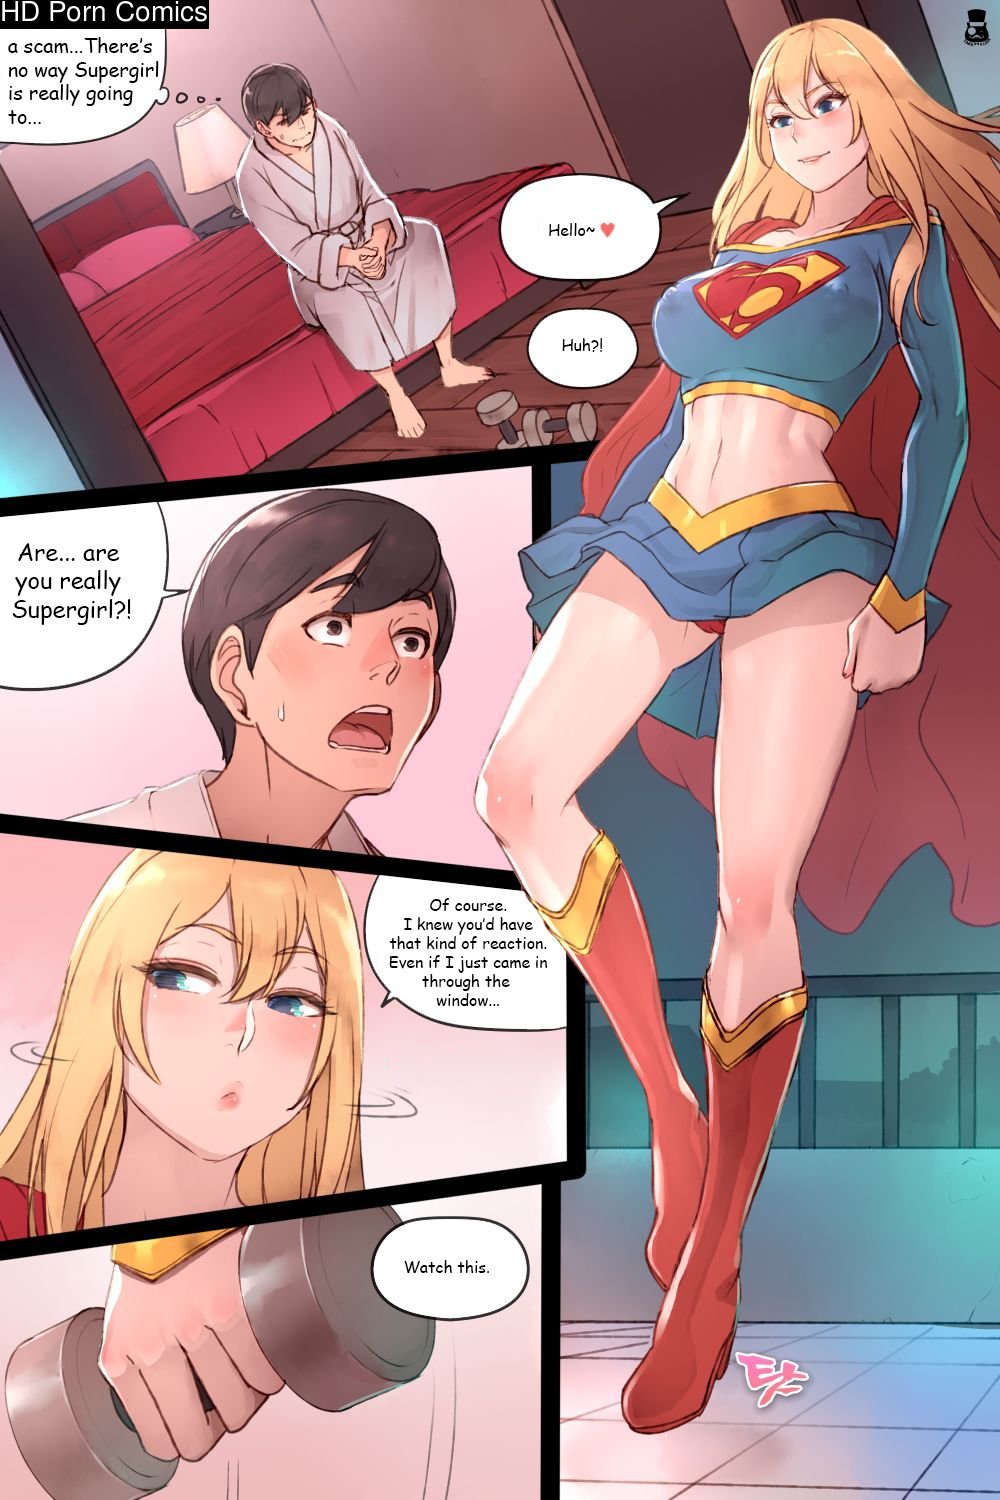 Xxx Cartoon Super Girl - Supergirl's Secret Service comic porn | HD Porn Comics